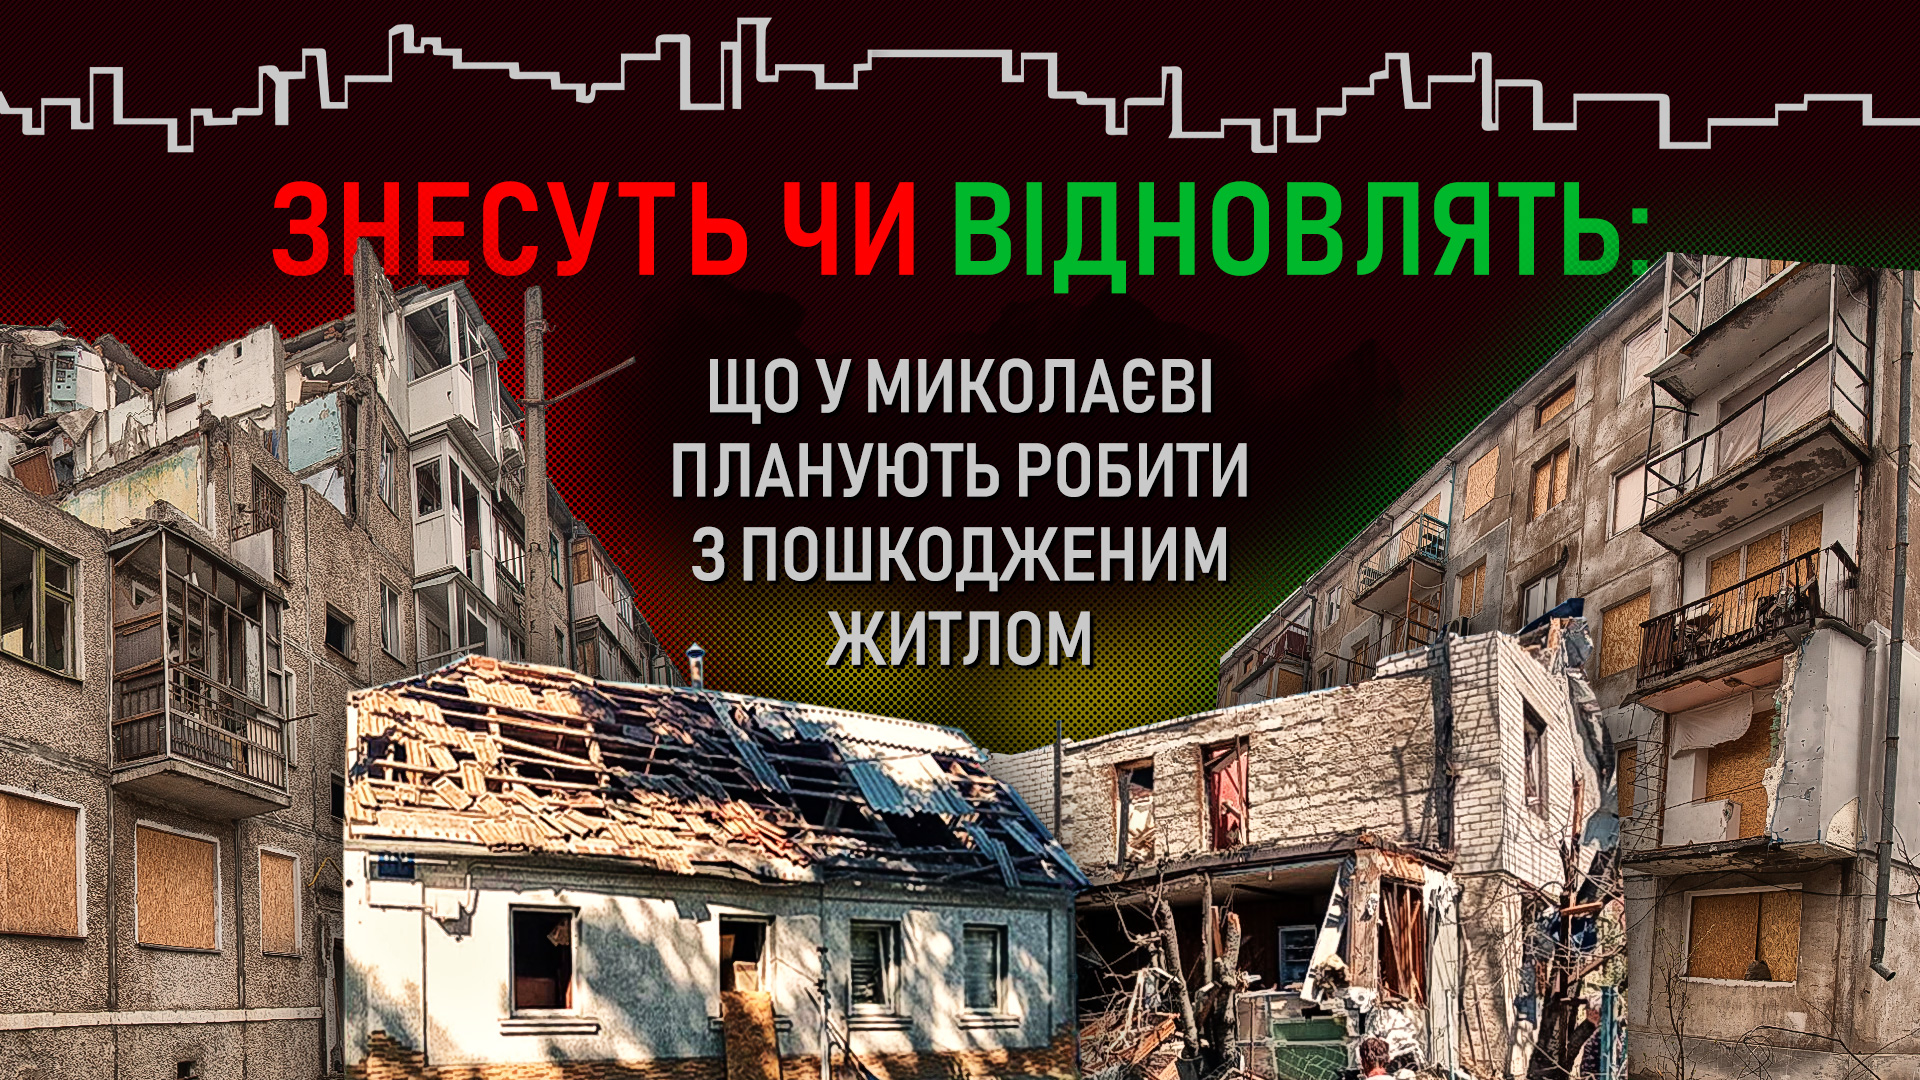 Будут ли в Николаеве восстанавливать разрушенные дома?